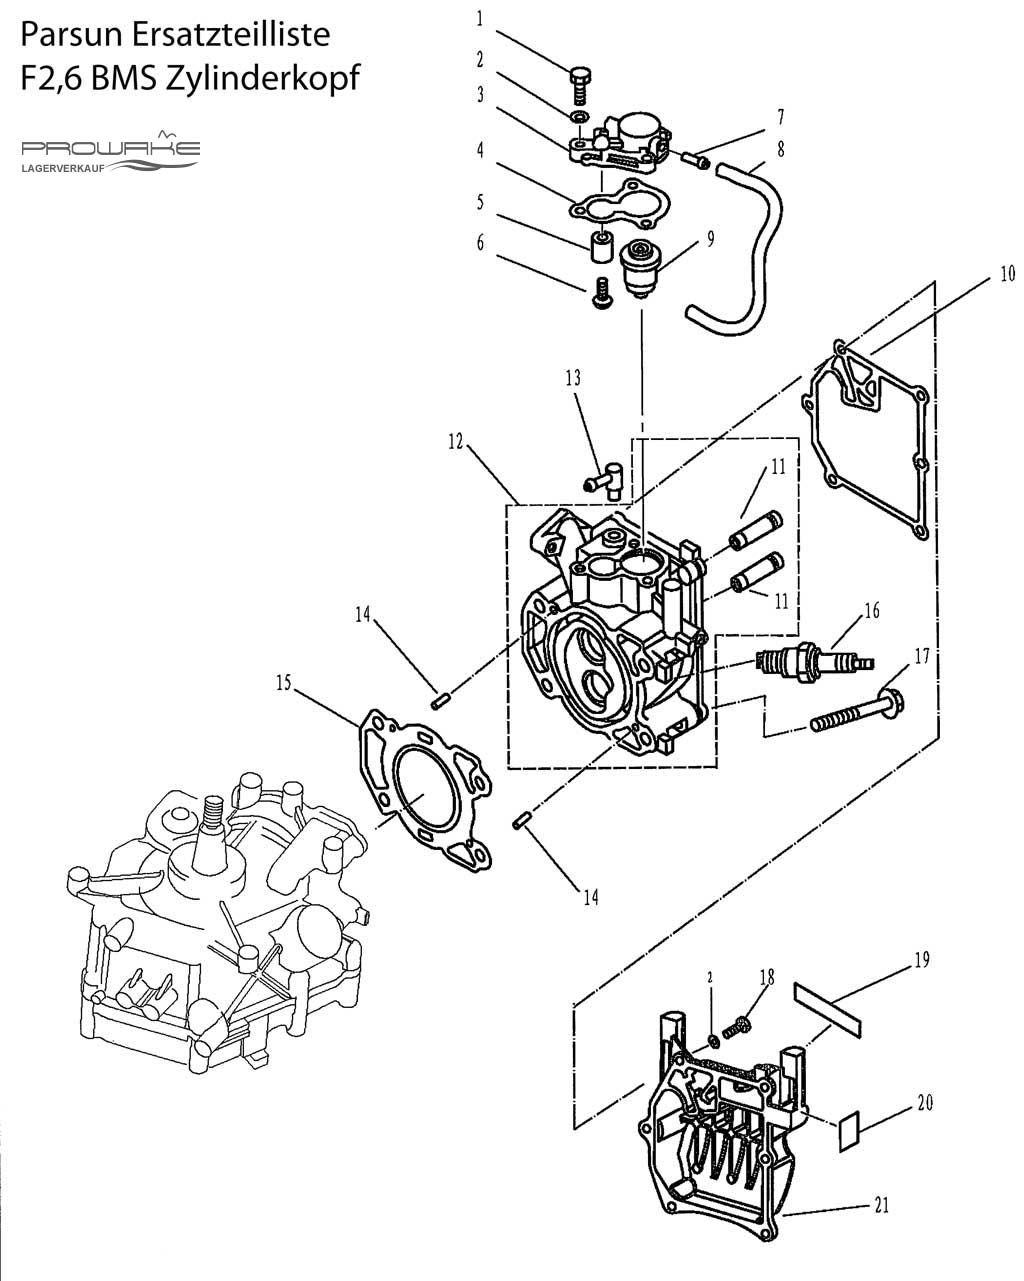 Parsun F2.6  Ersatzteile / Spare Parts: Zylinderkopf